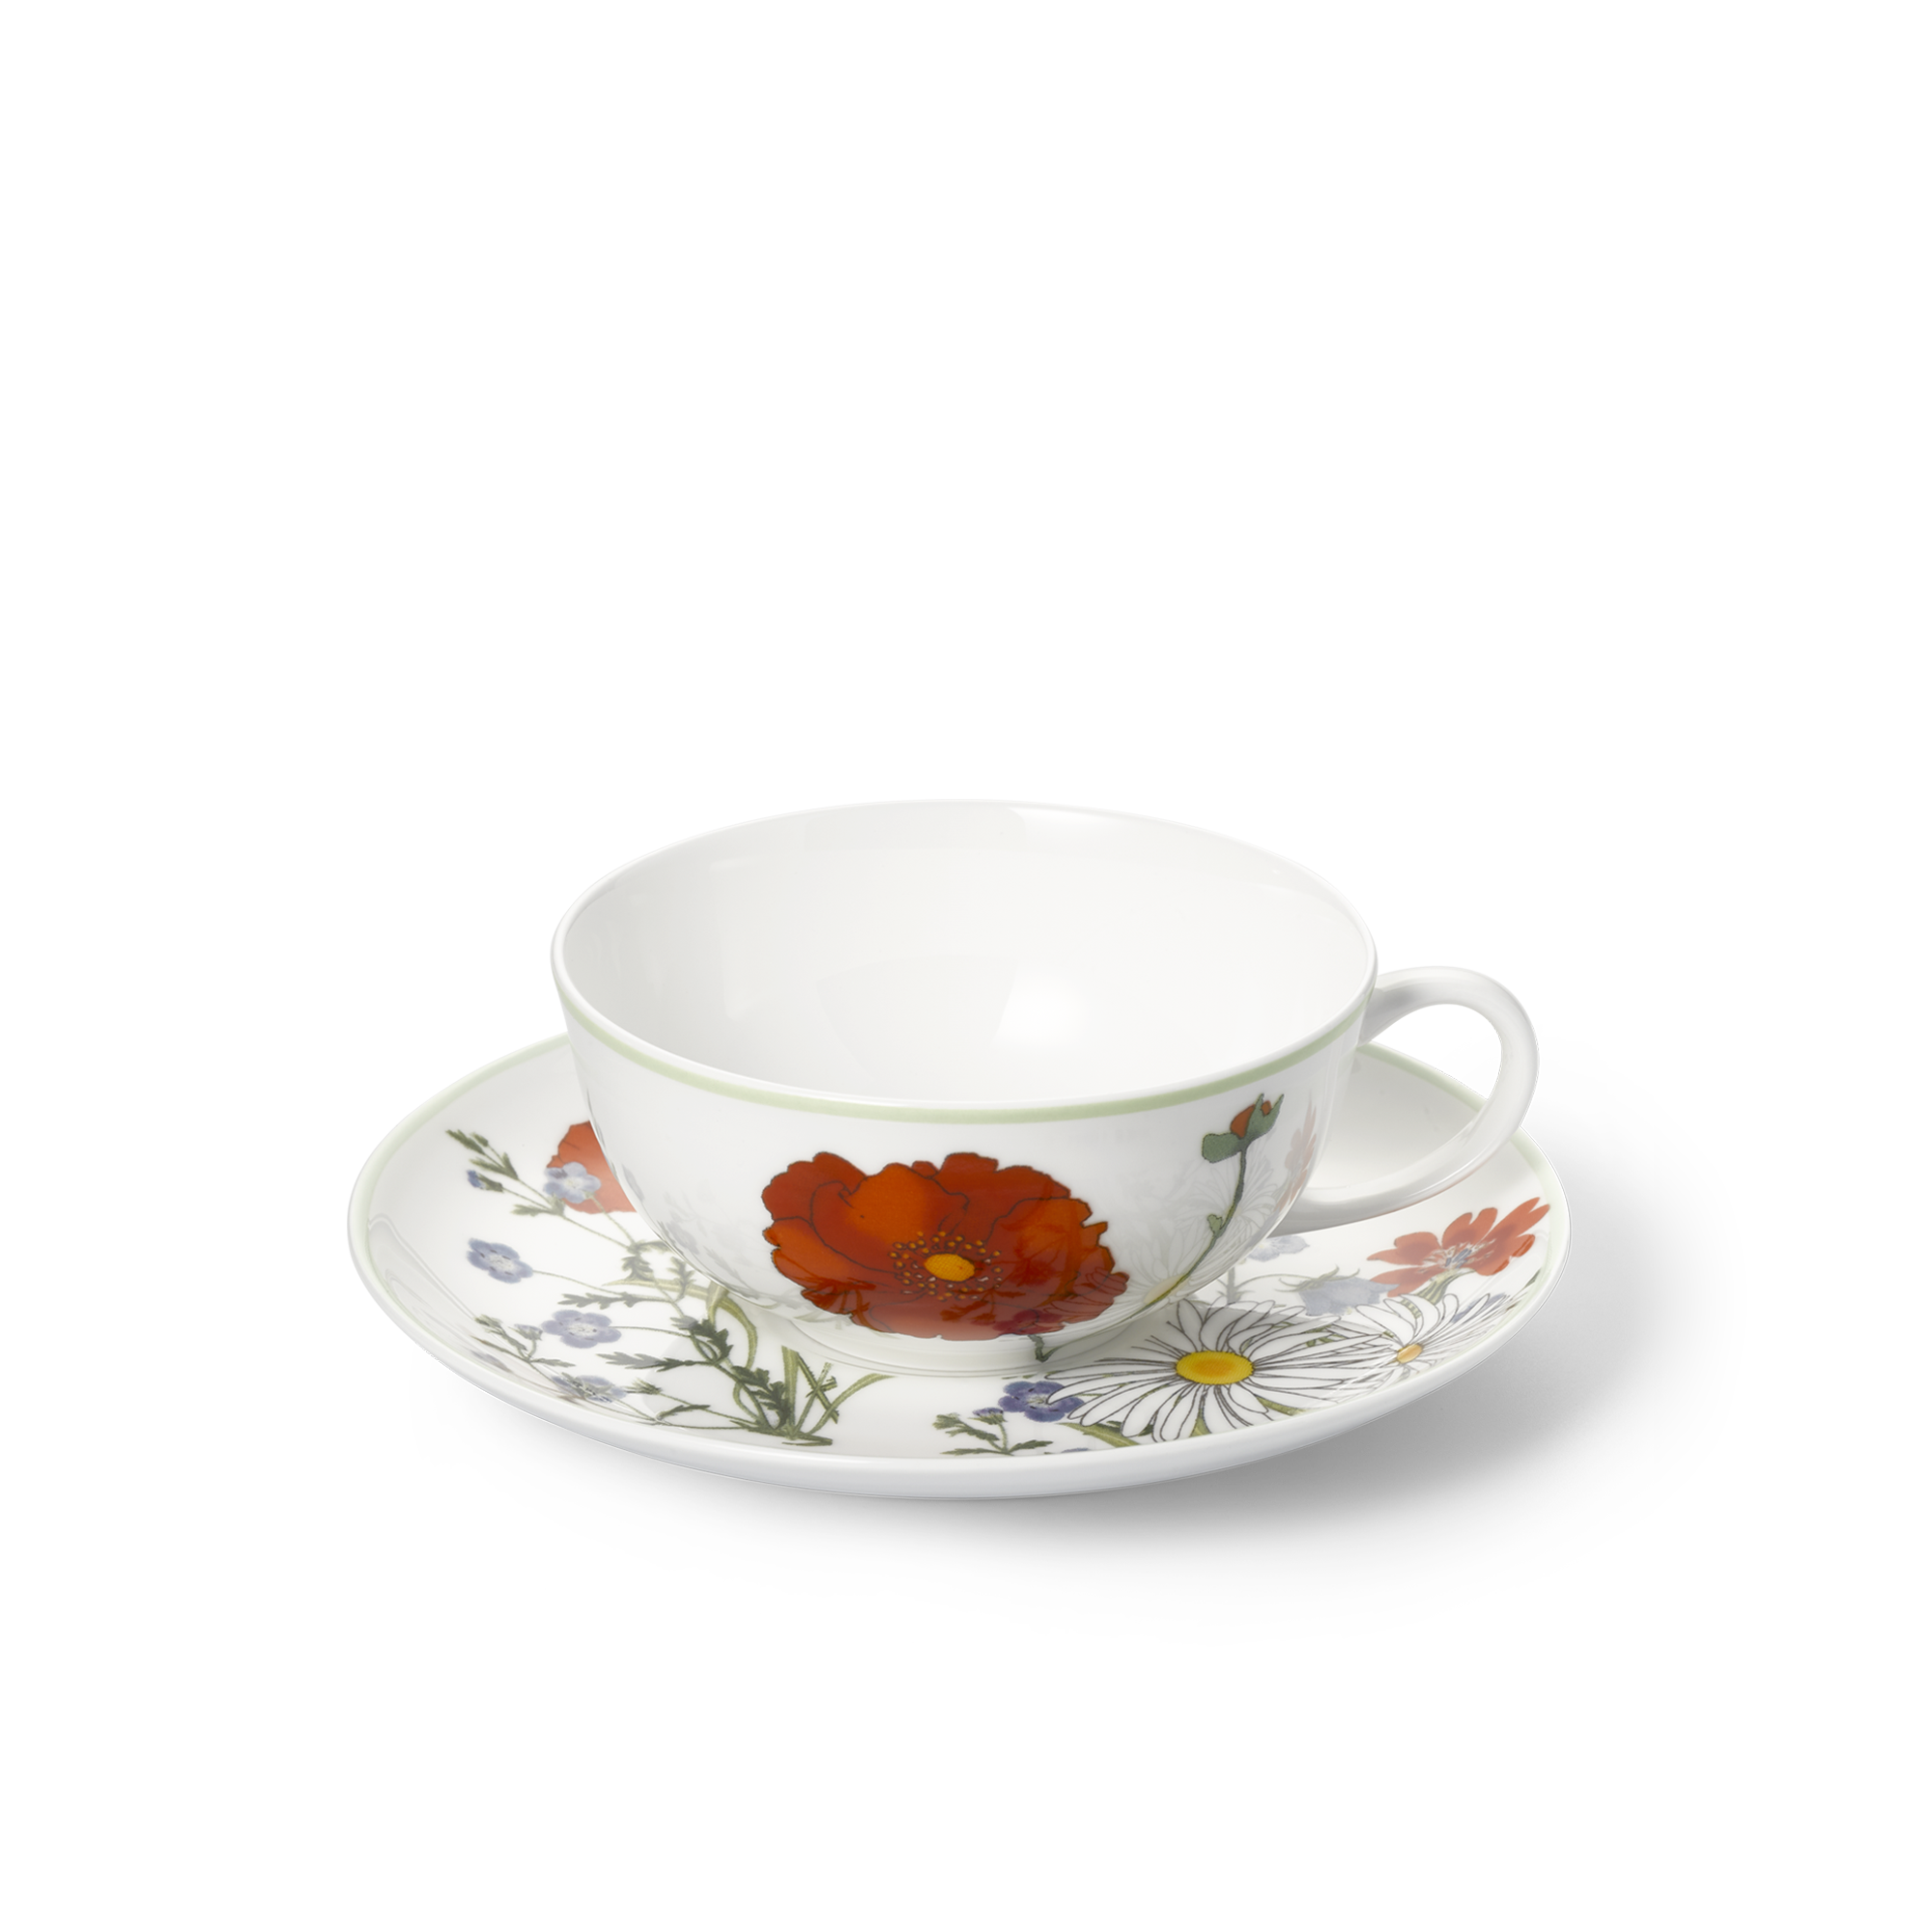 Summergarden teacup